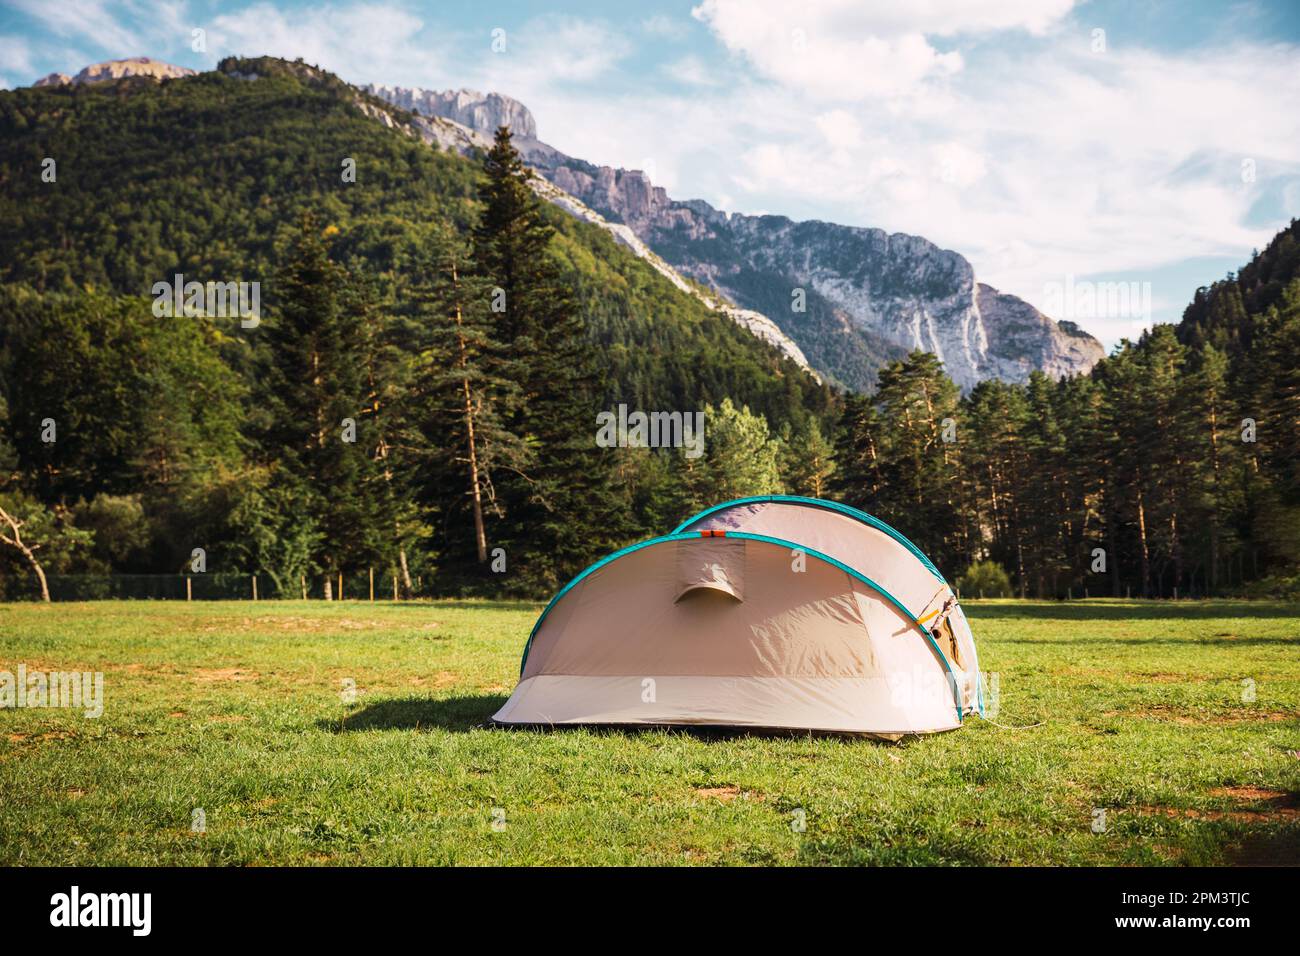 Tente avec vue imprenable sur la forêt et les montagnes. Vacances de camping et vacances d'été en plein air. Concept de style de vie Banque D'Images